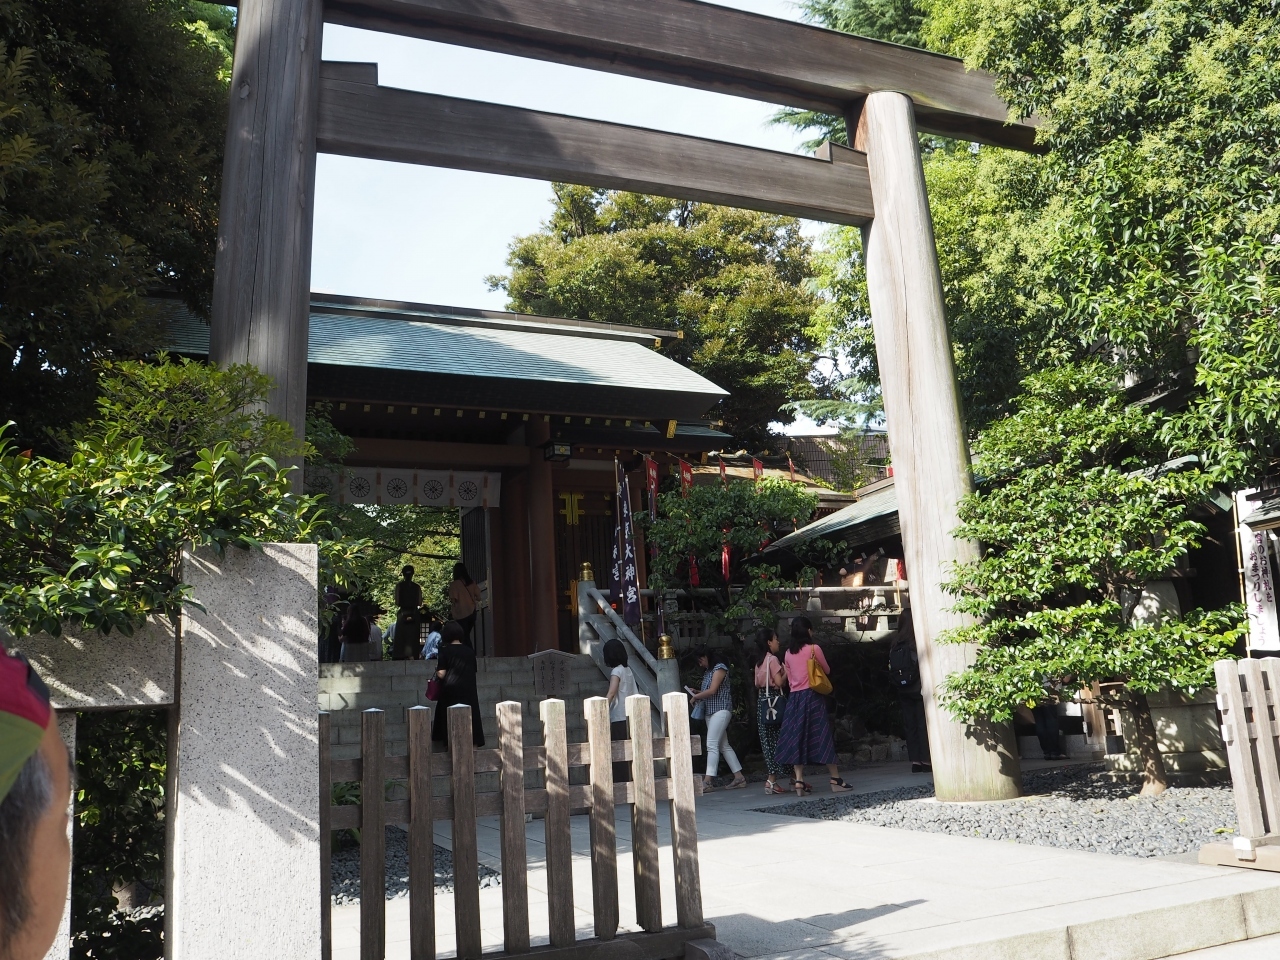 ありました！

東京大神宮ですって。

縁結びで有名な場所のようです。